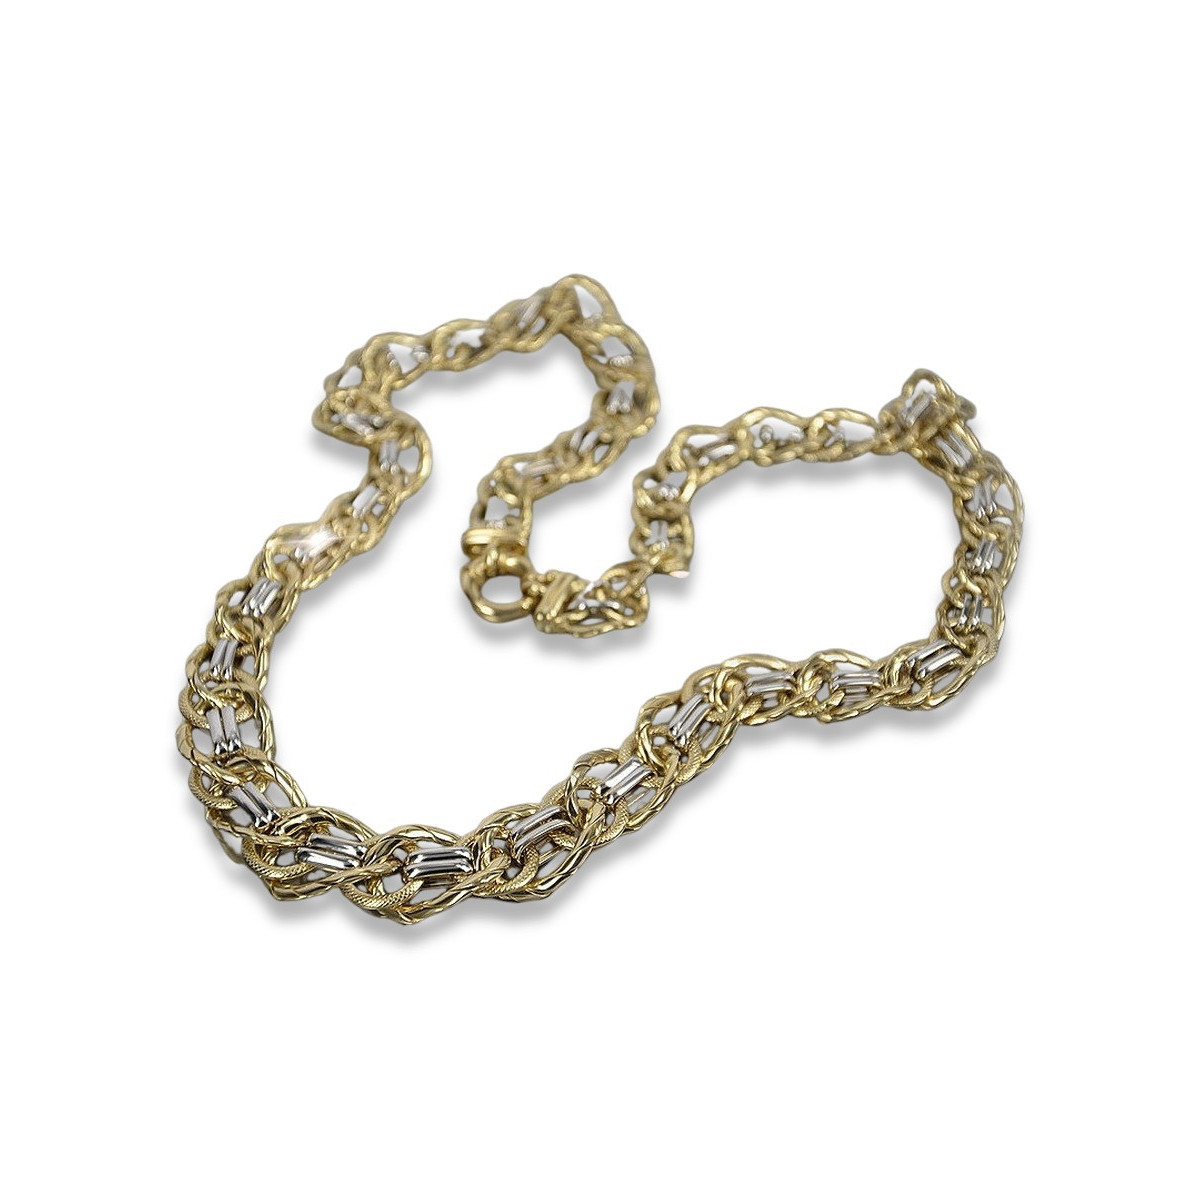 Gelb-weiße Halskette aus 14 Karat Gold, Kette cfc009yw